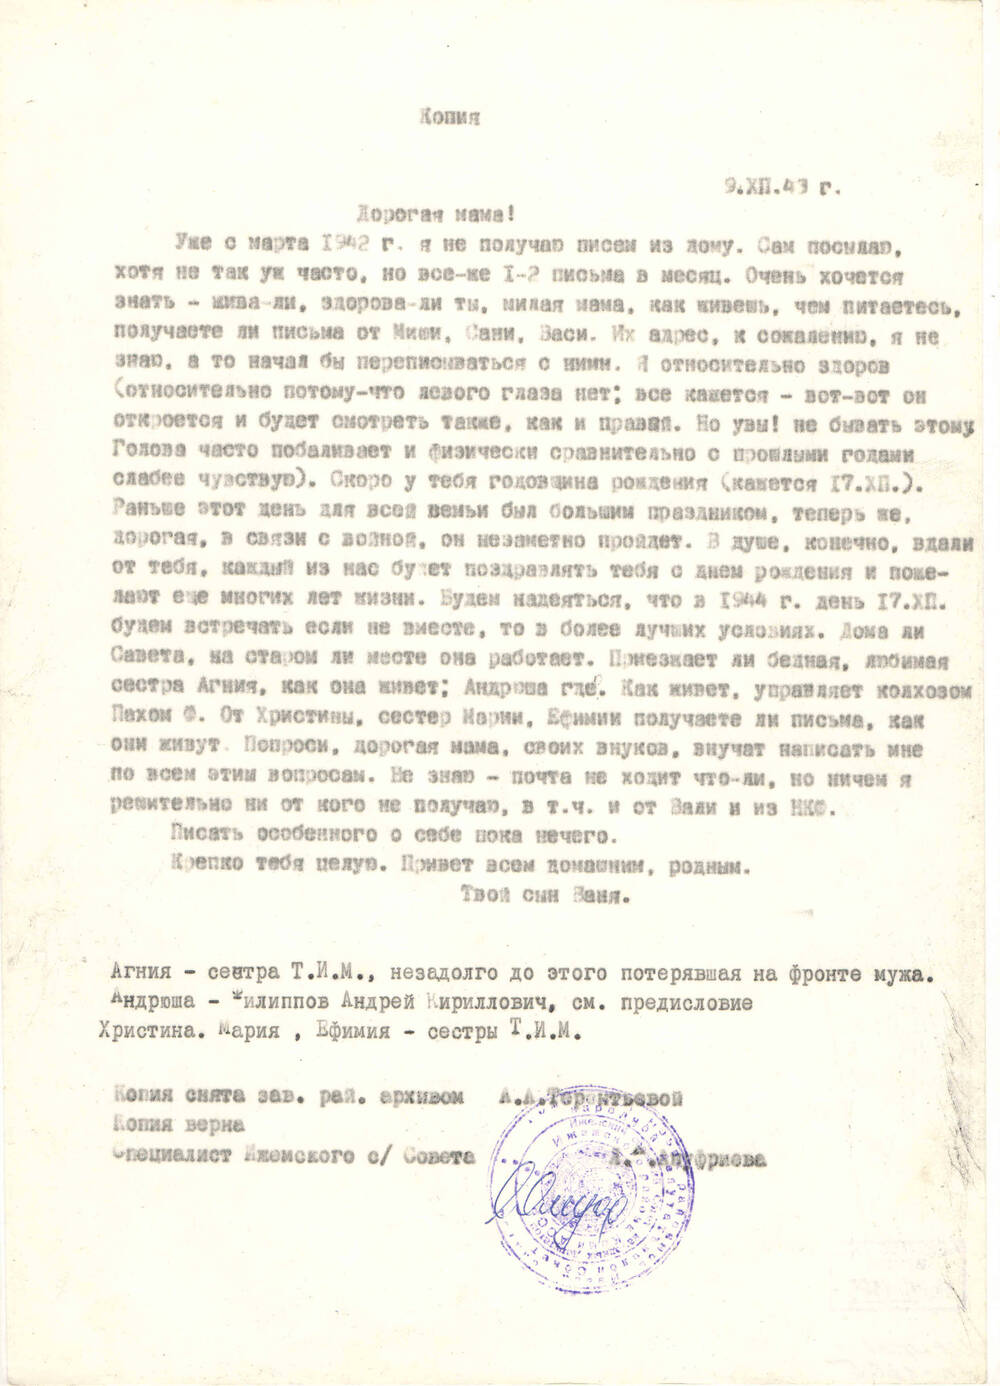 Копия письма с фронта Терентьева И.М. маме Терентьевой В.П. от 09.12.1943 года (оригинал хранится в Ижемском архиве)